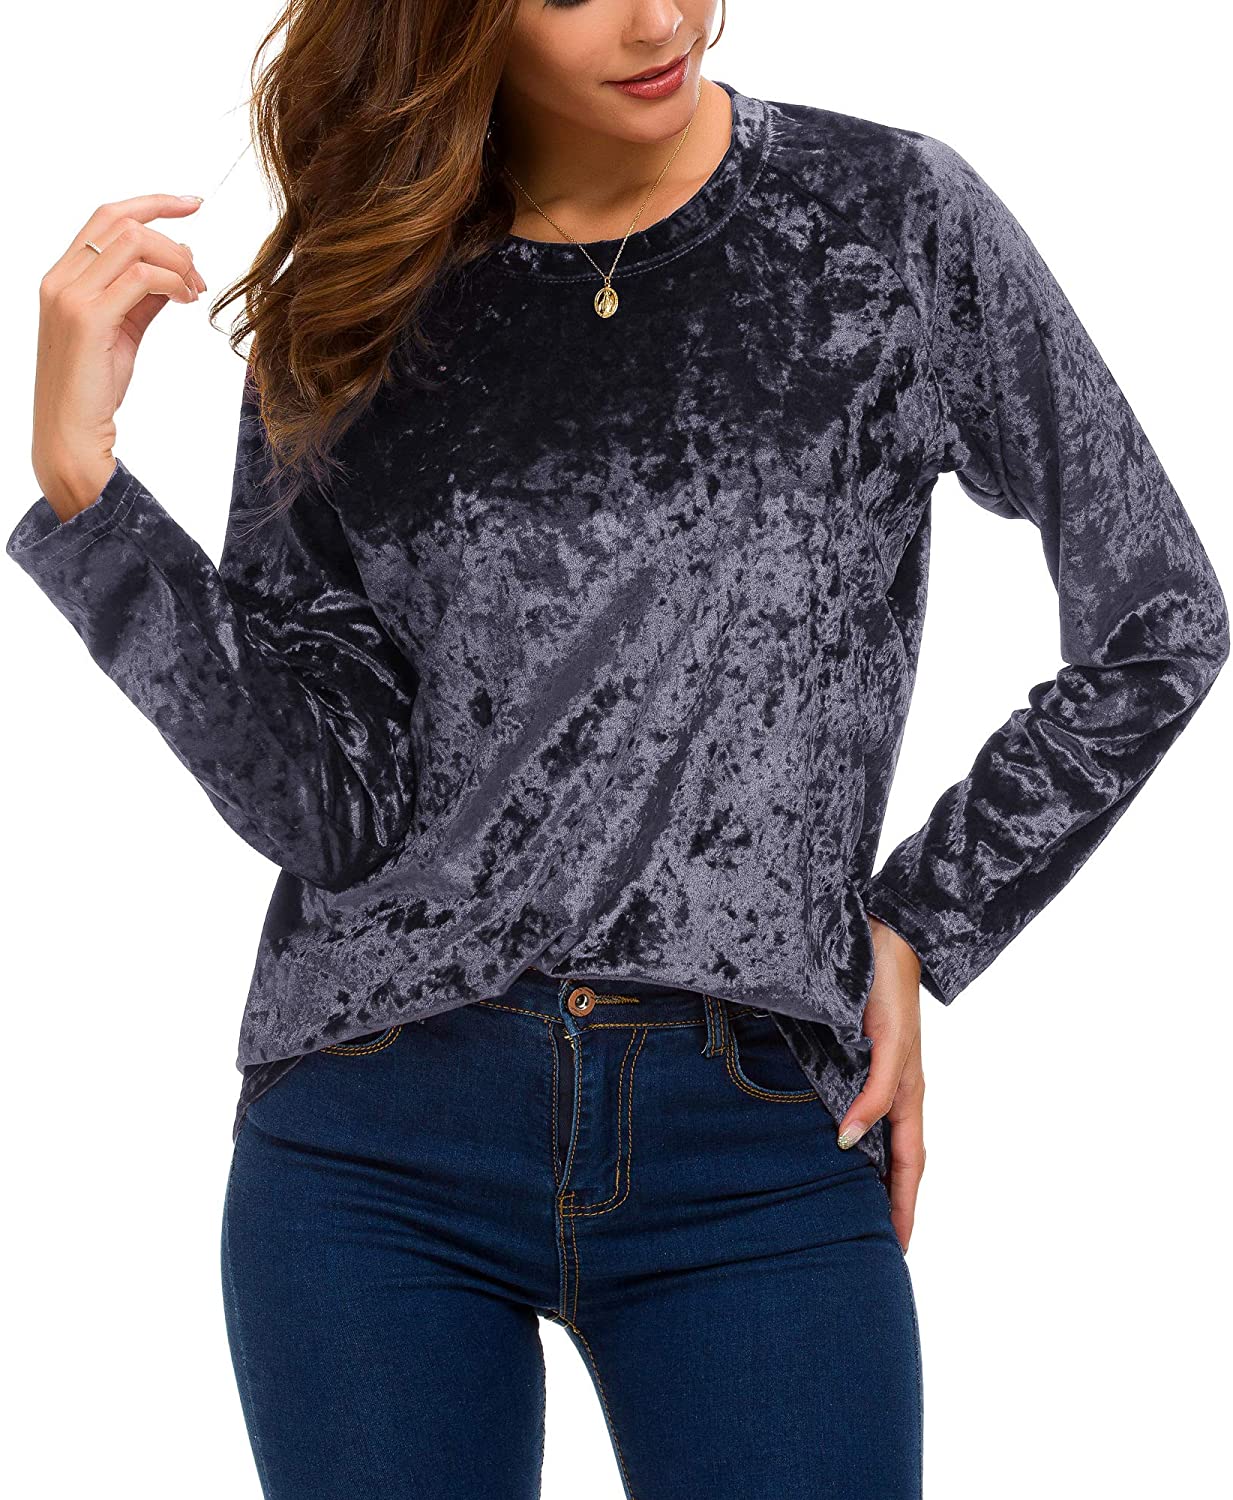 Women's Vintage Velvet T-Shirt Casual Long Sleeve Top | eBay